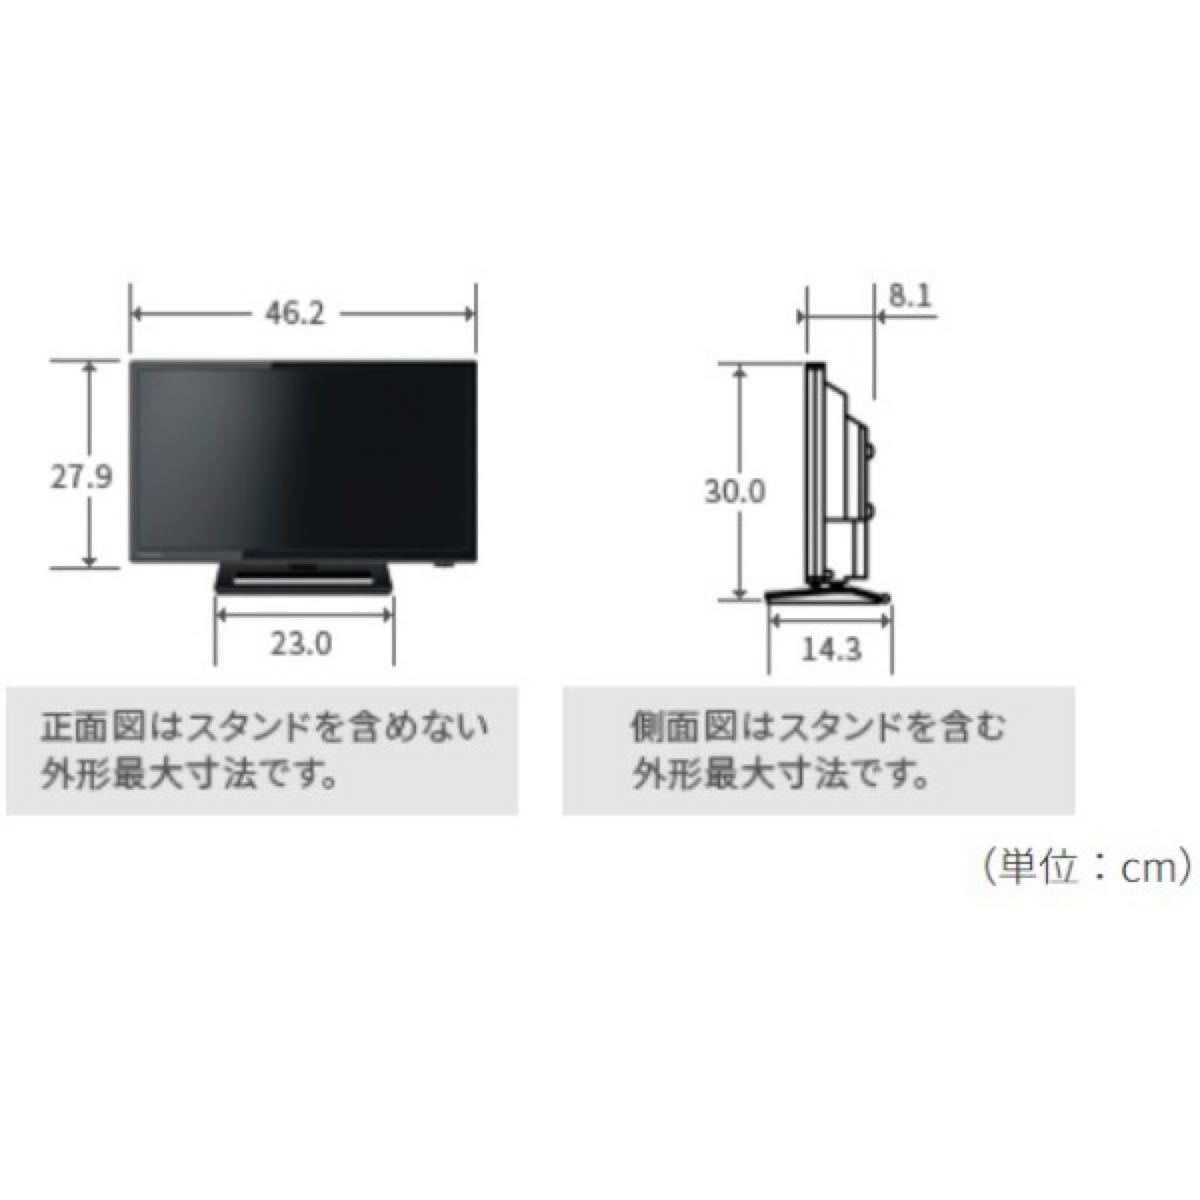 TOSHIBA 液晶テレビ REGZA(レグザ) 19S22 [19V型 /ハイビジョン]